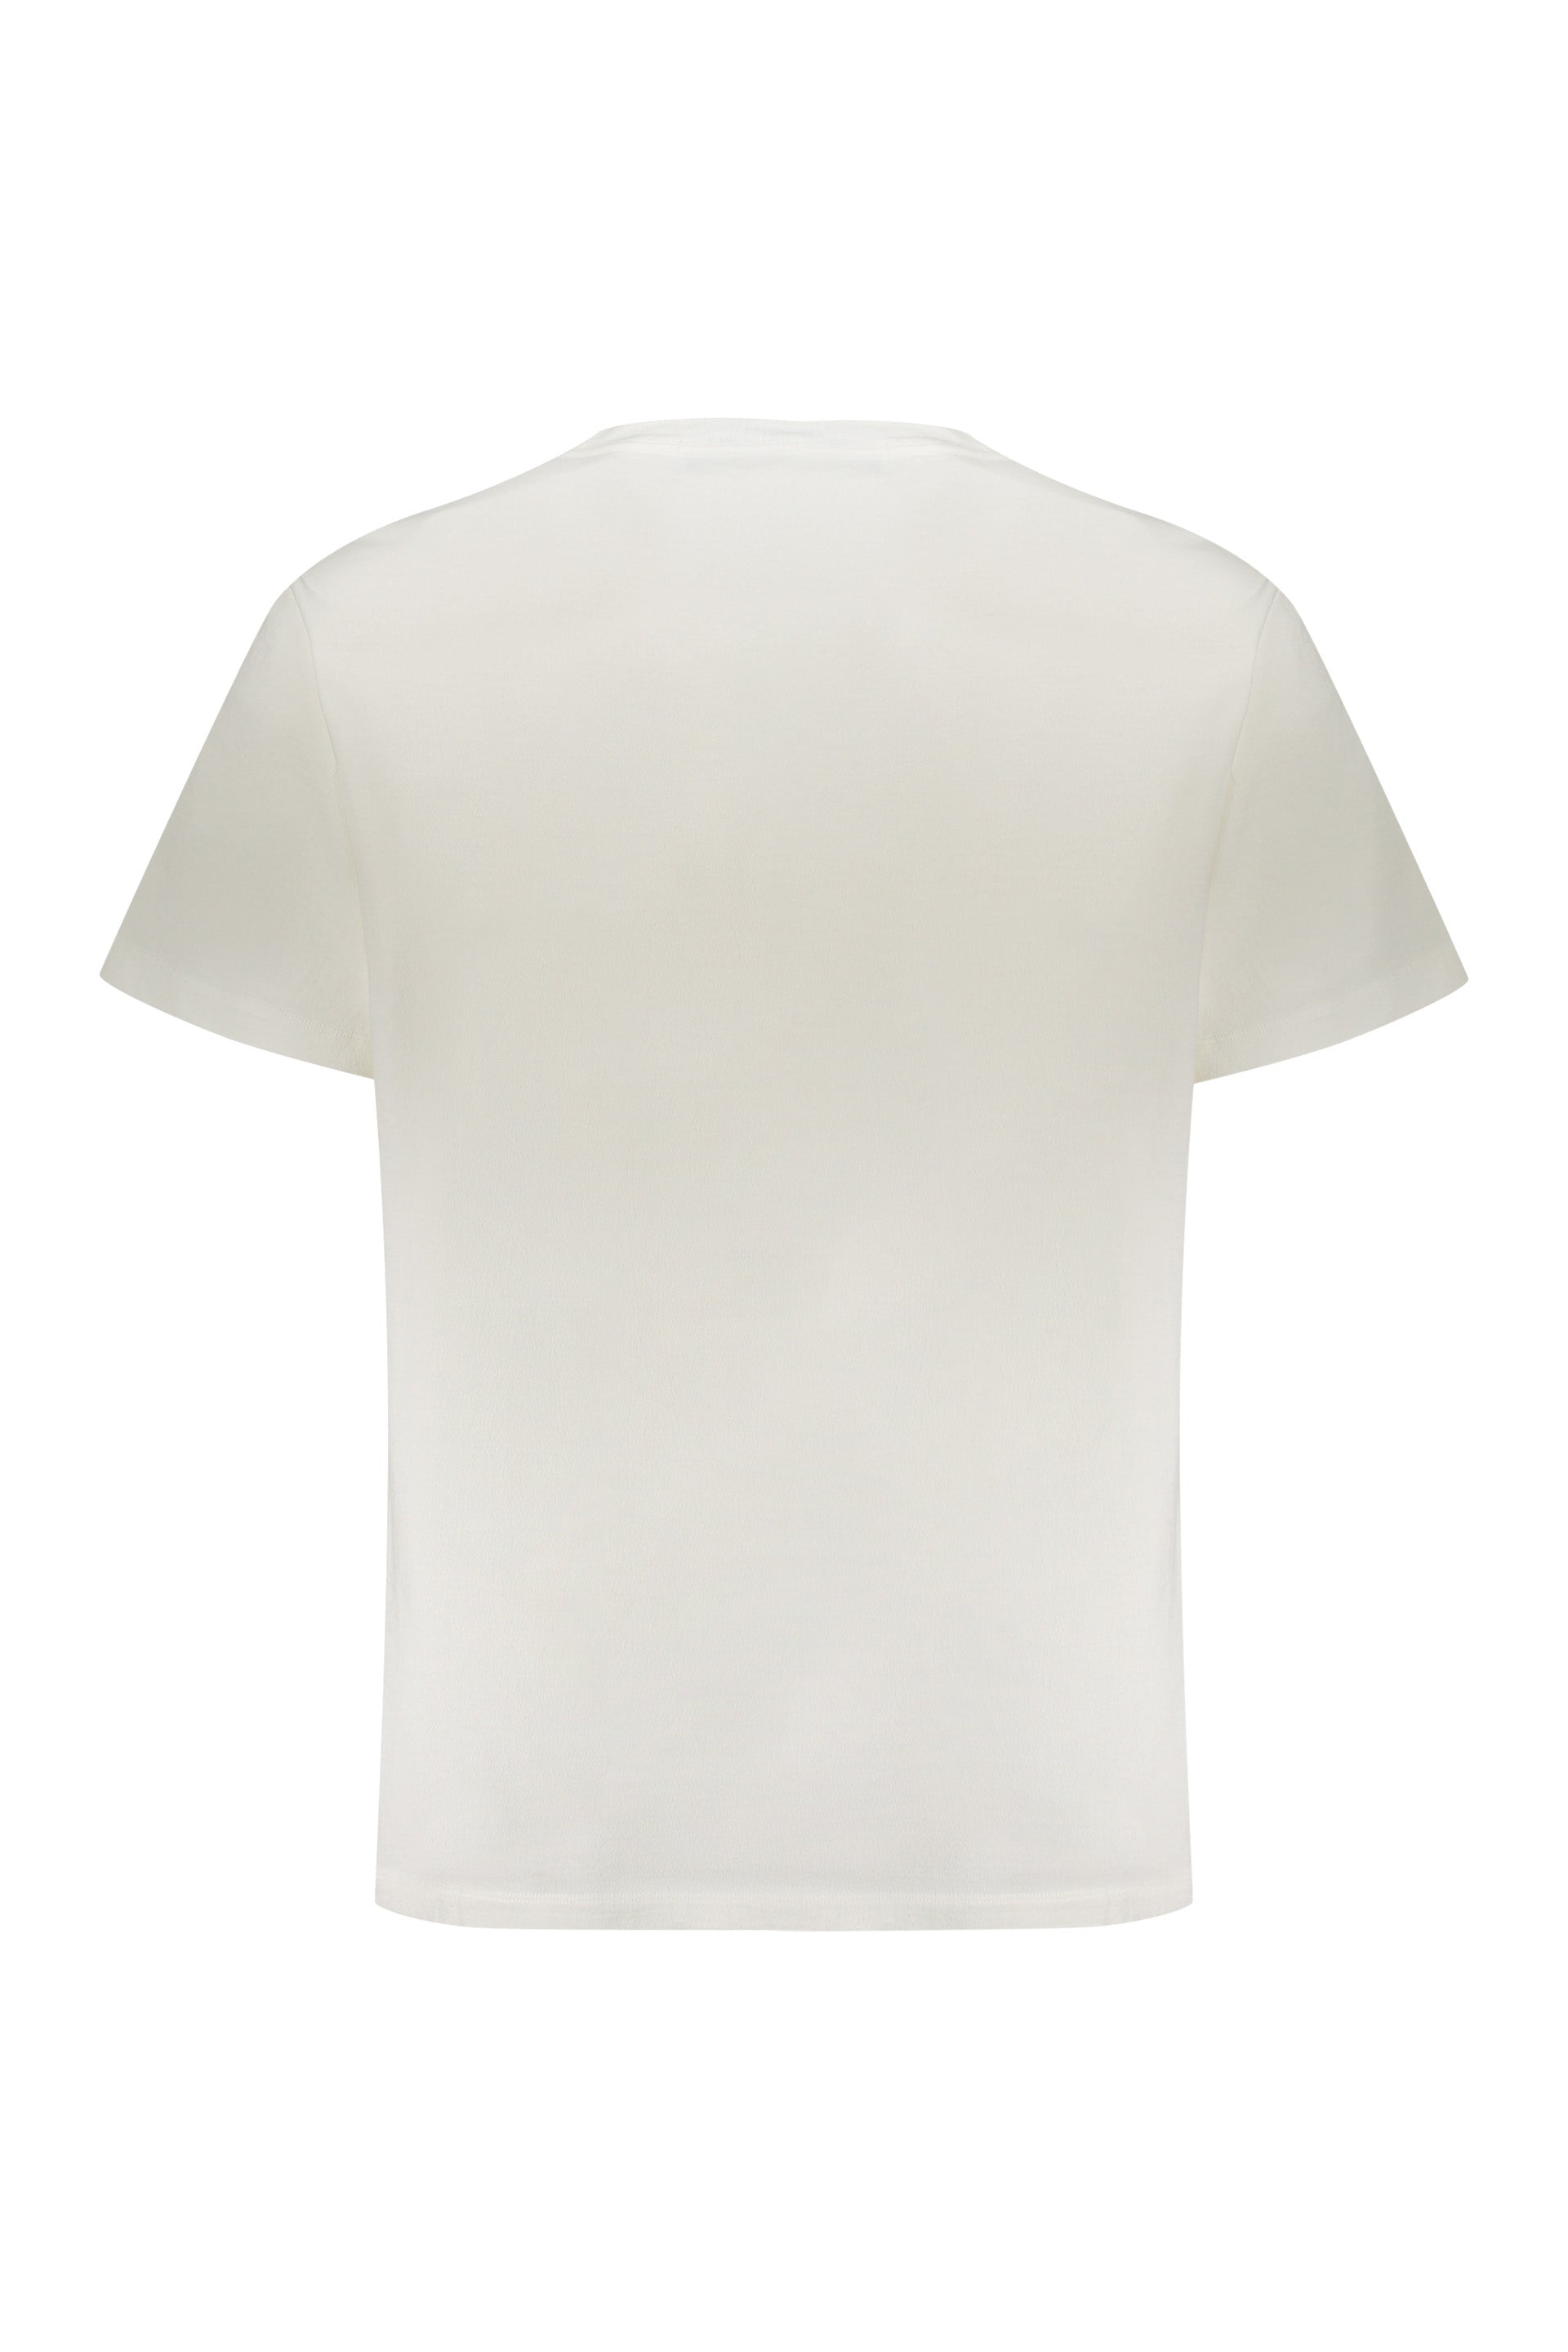 AMBUSH-OUTLET-SALE-Cotton-T-shirt-Shirts-ARCHIVE-COLLECTION-2_8b3d3fa9-d585-4ea6-add1-7099682f0458.jpg